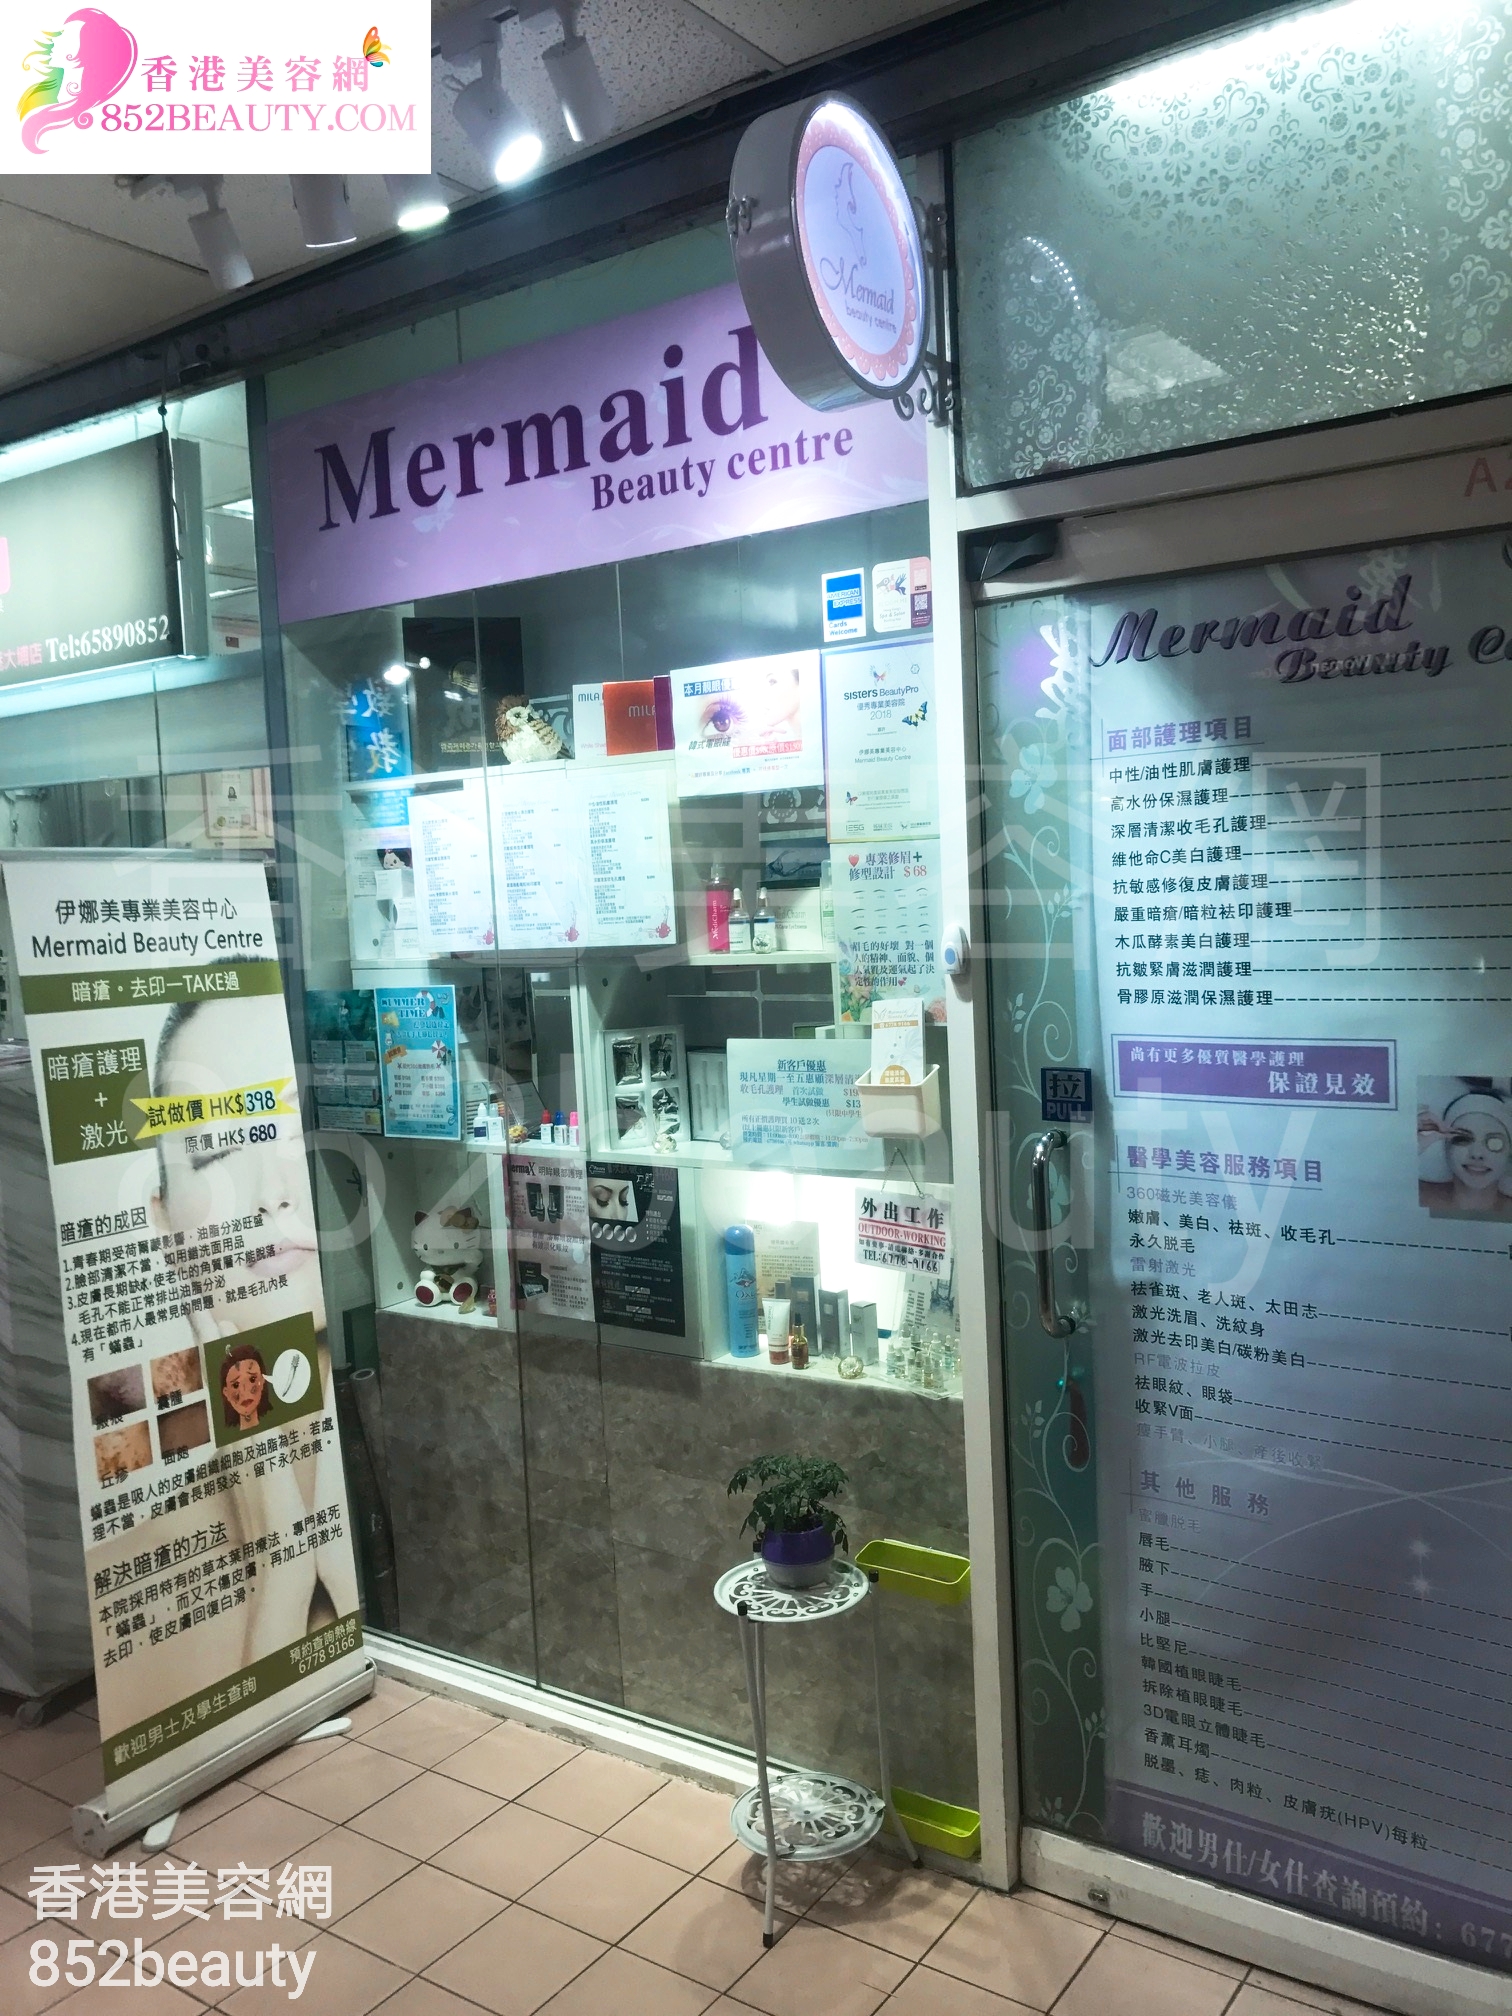 医学美容: 伊娜美專業美容中心 Mermaid Beauty Centre